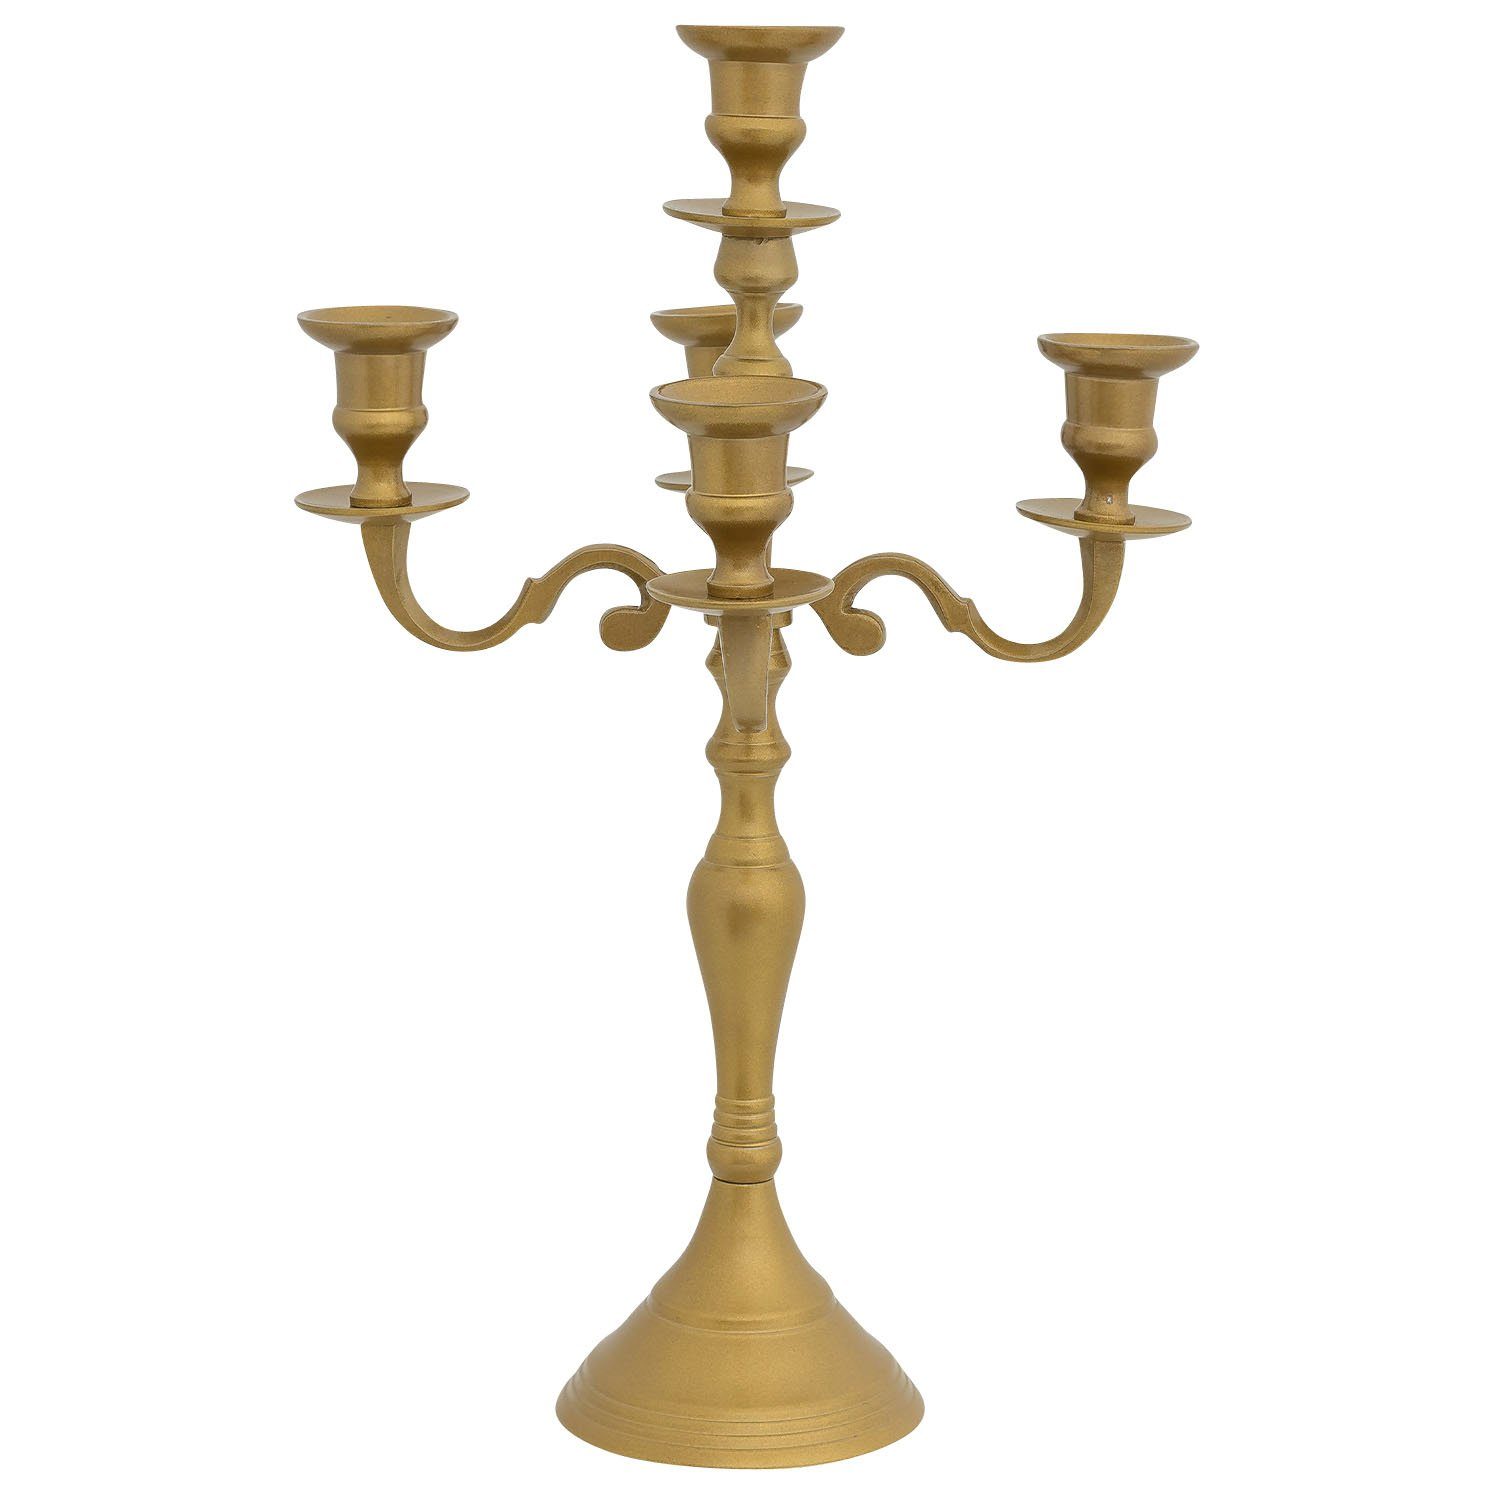 Antik-Stil Aluminium Kerzenständer Aubaho Kerzenhalter 40cm gold 5-armig Kerzenständer